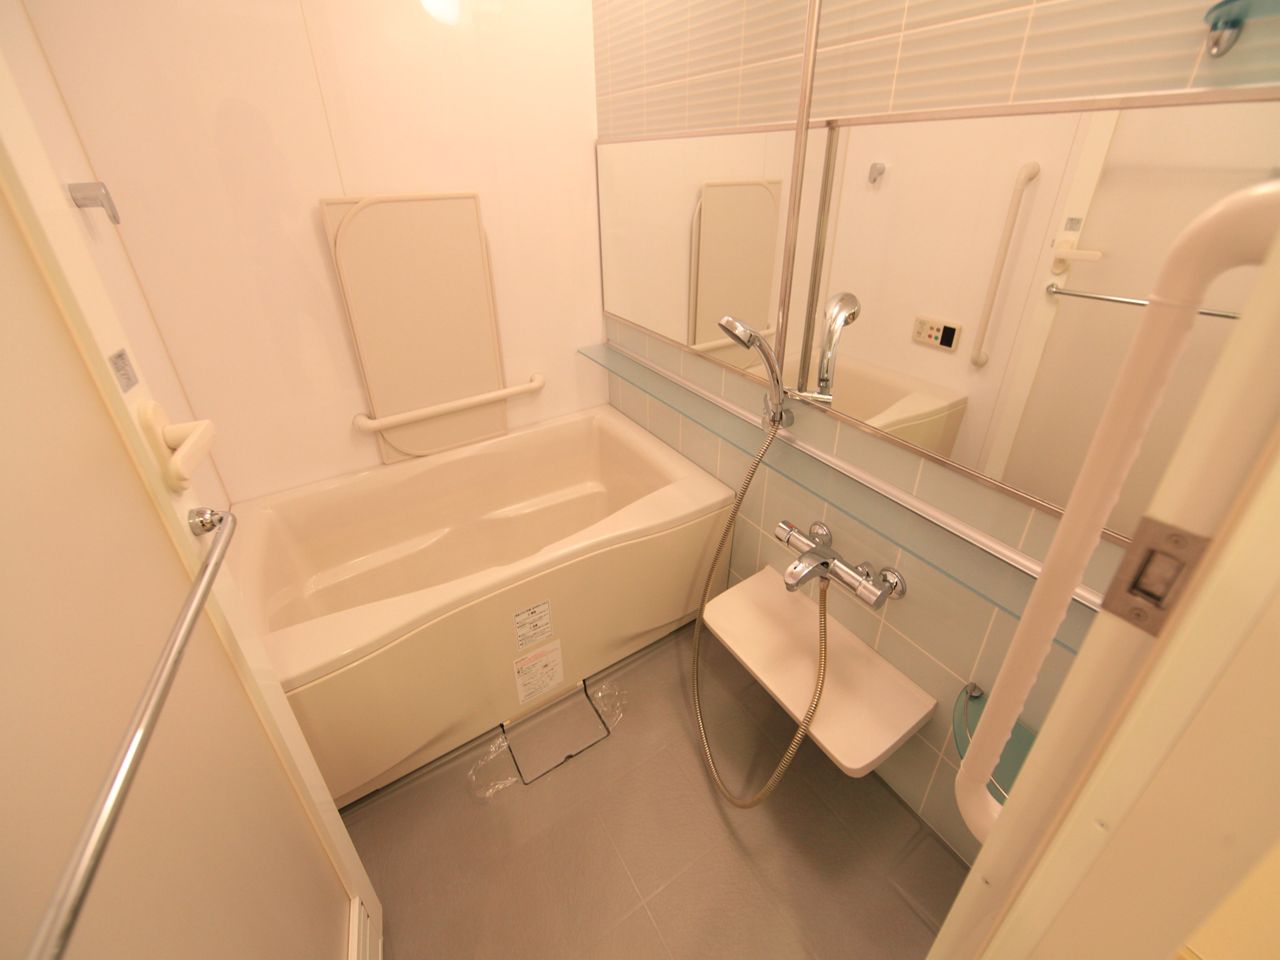 Bath. bus Bathroom heating dryer Add 炊 with function